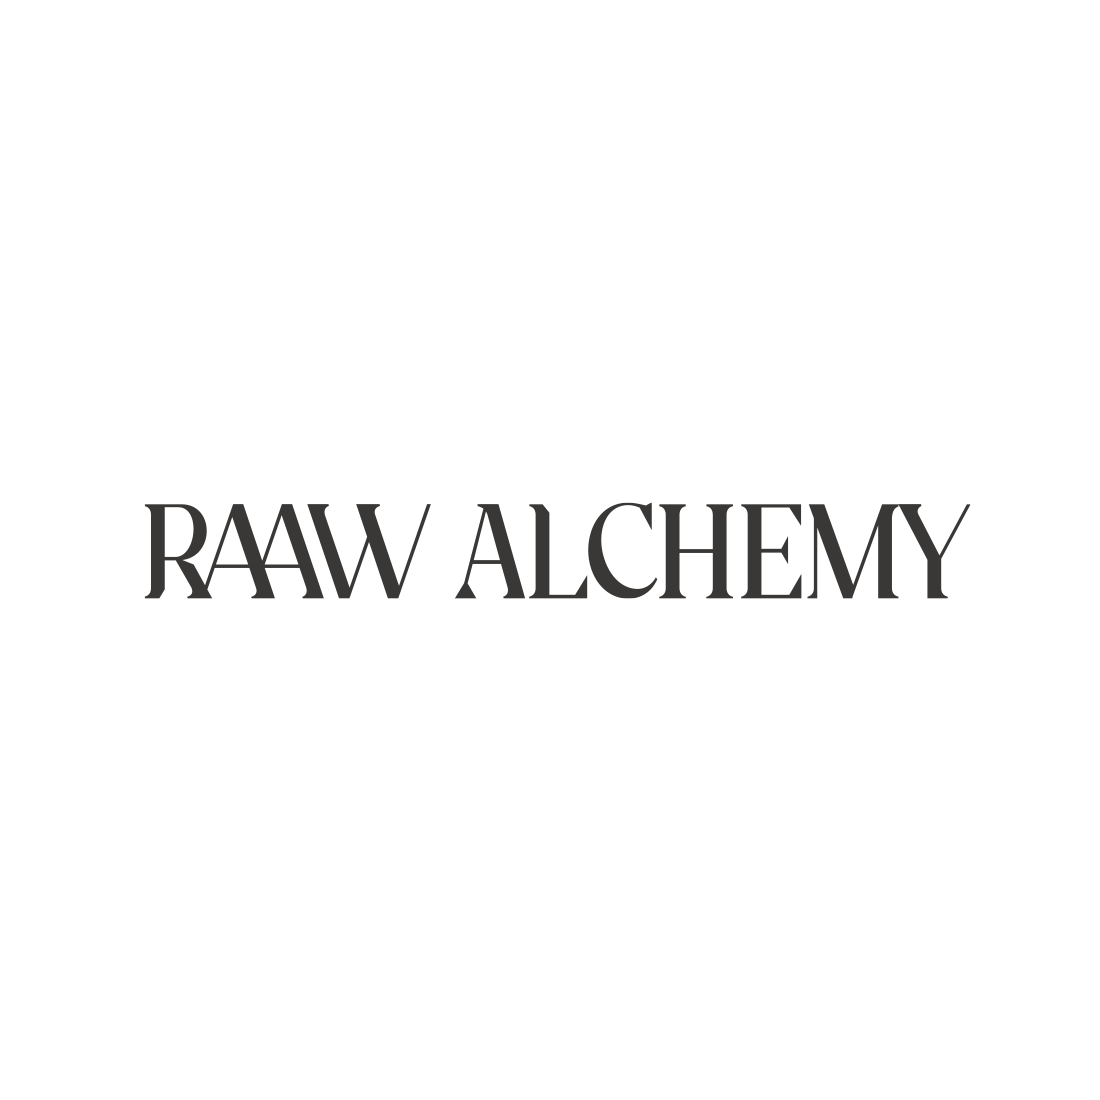 Raaw Alchemy logo